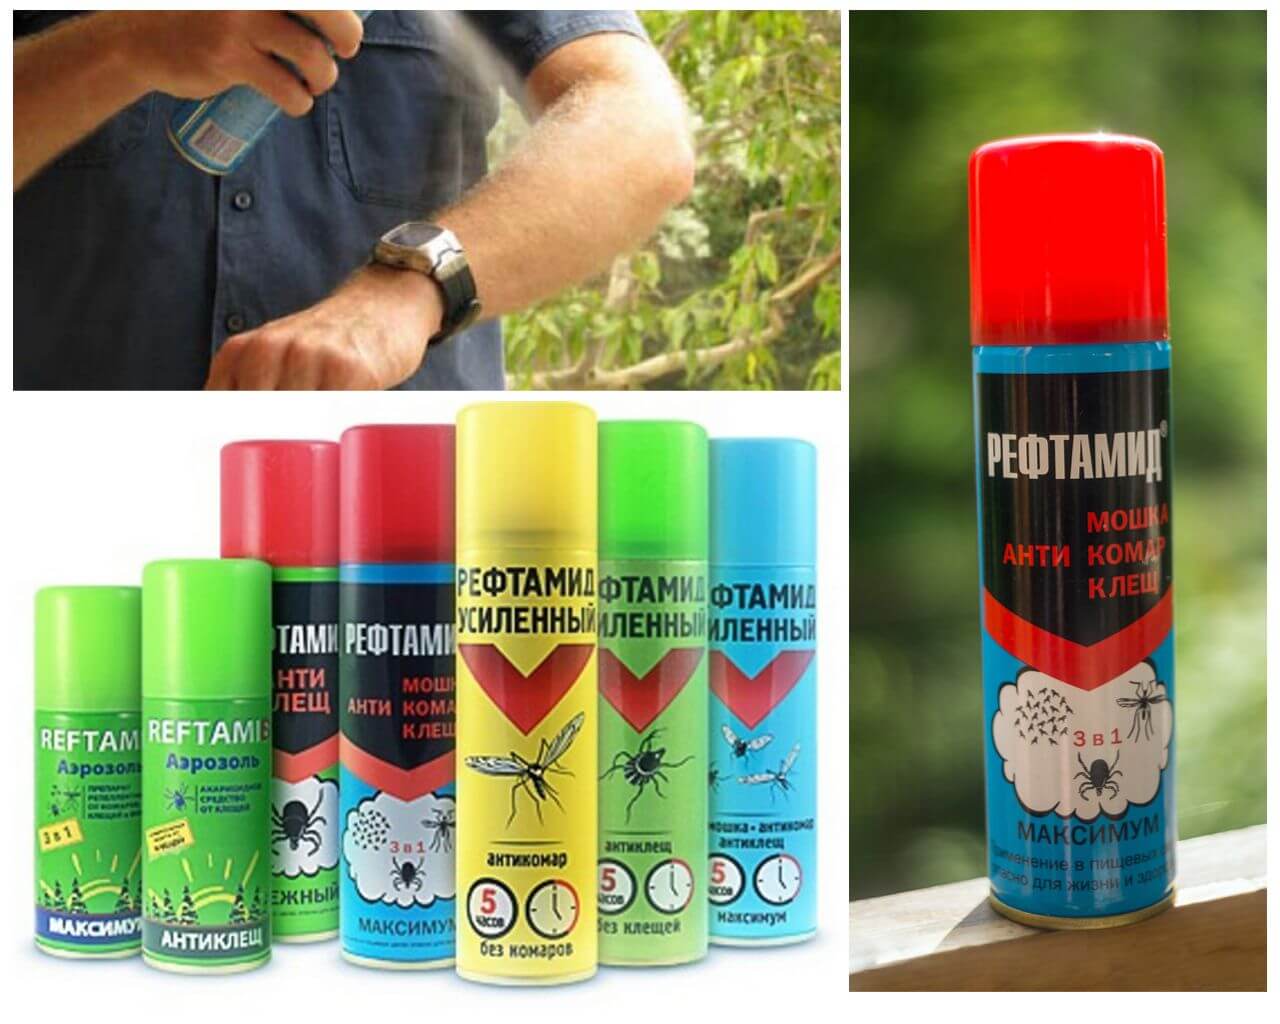 Spray de reftamide contre les moustiques